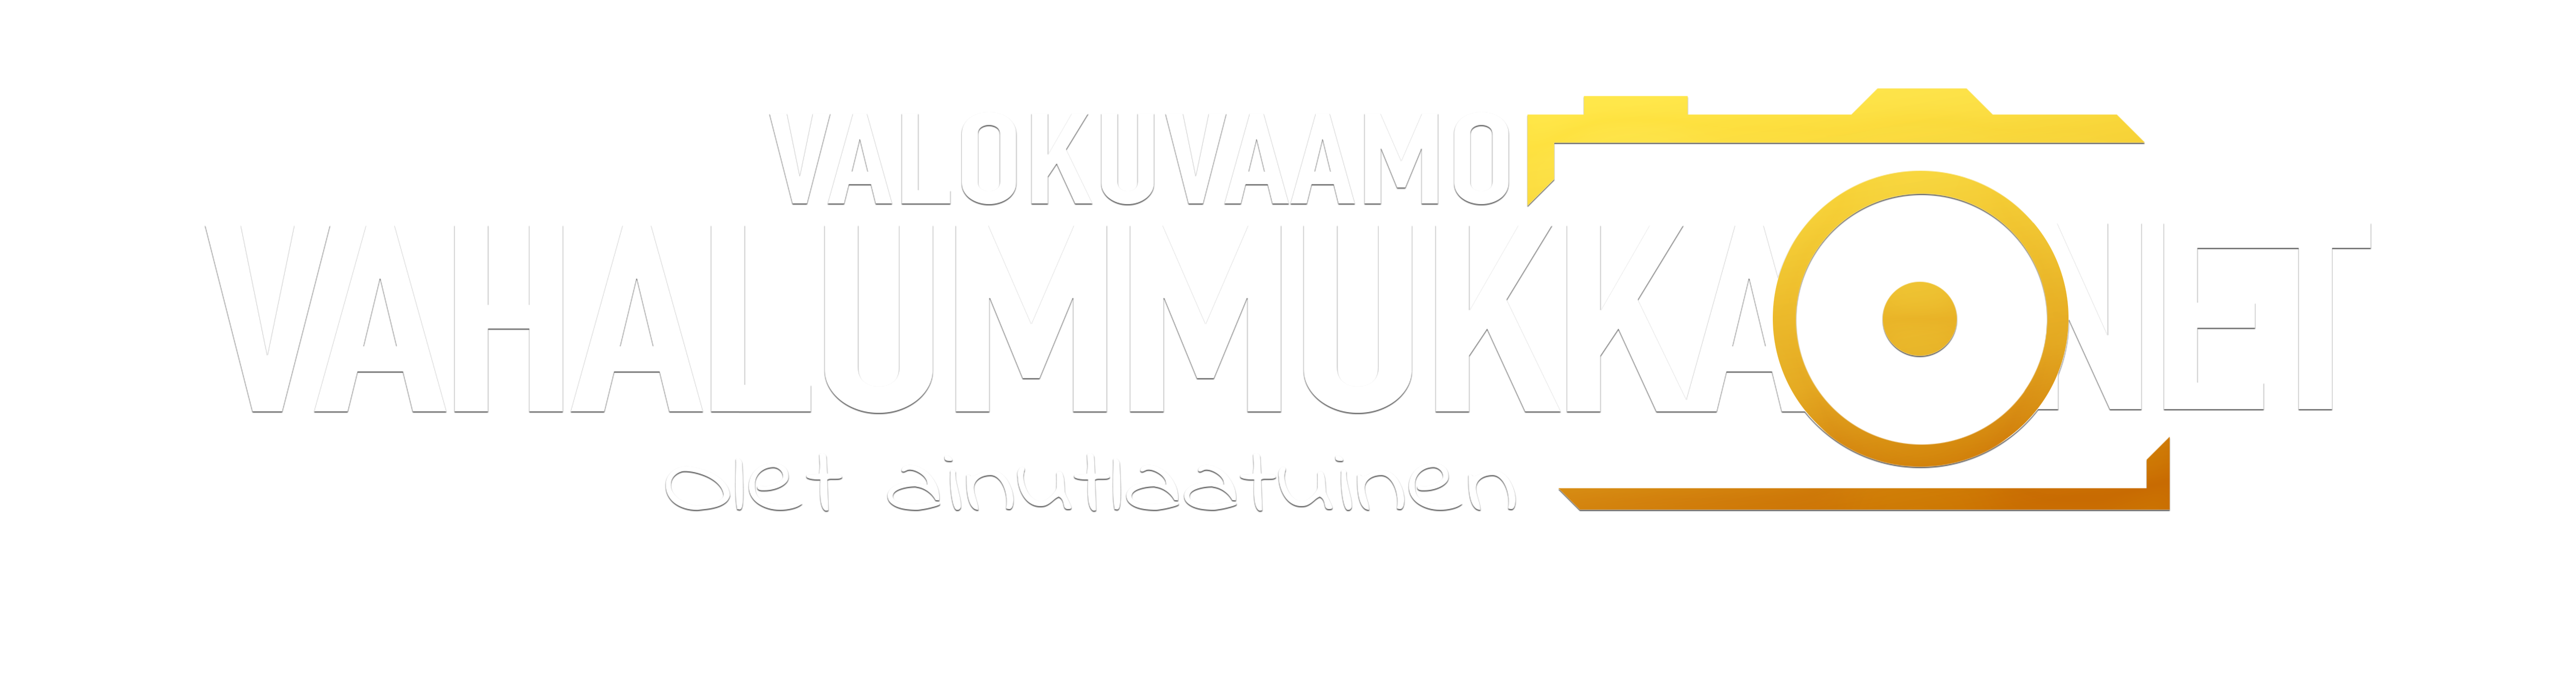 Valokuvaamo Vahalummukka.net | Vaasa | Mustasaari